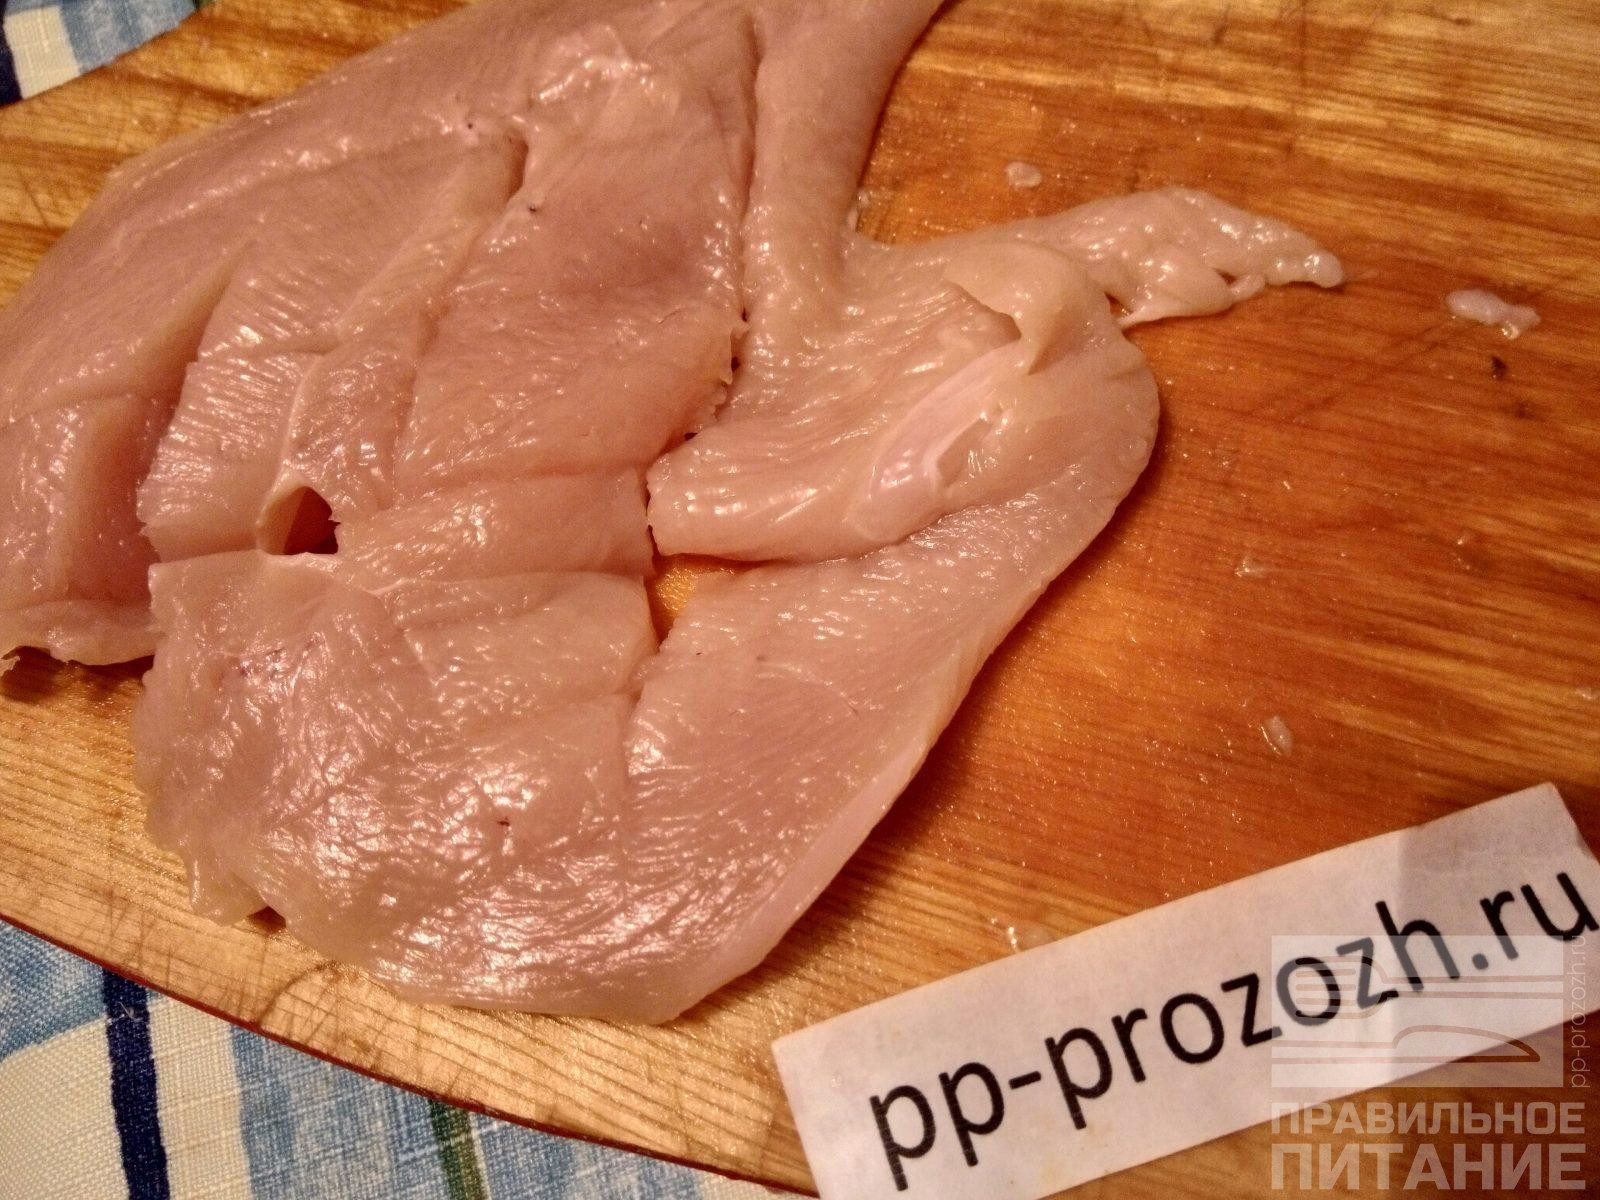 Куриная грудка диетическая - рецепты с фото на irhidey.ru (63 рецепта диетической куриной грудки)